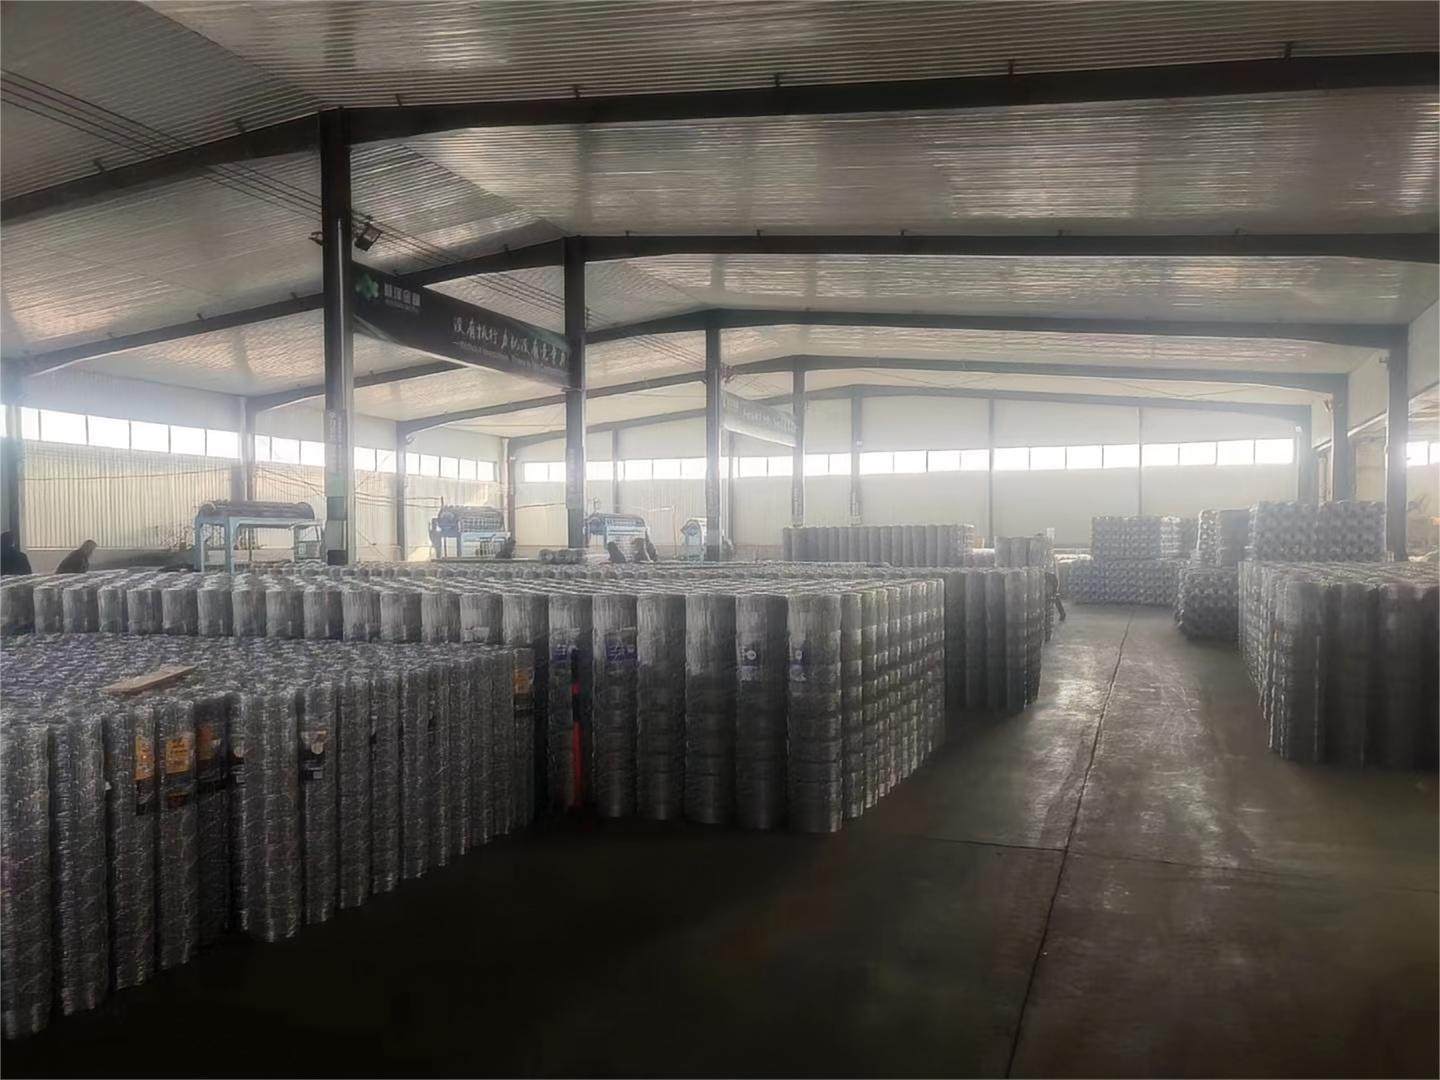 DingZhou XinWang Metal Wire Mesh Co., Ltd. 